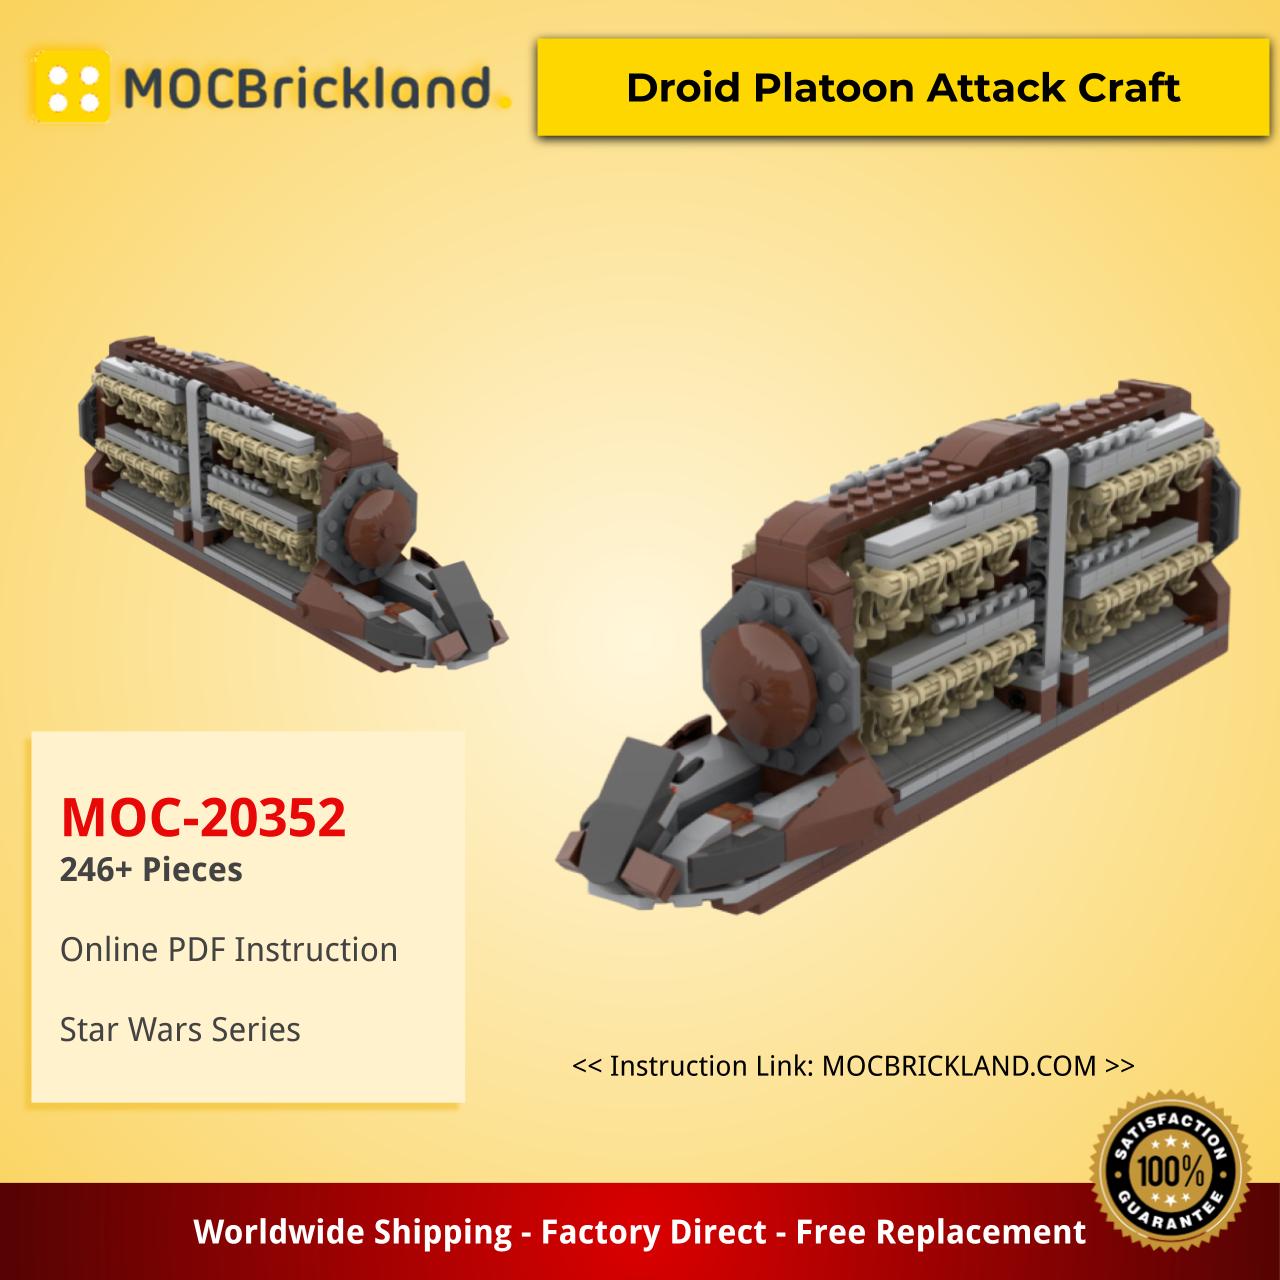 Star Wars MOC-20352 Droid Platoon Attack Craft by EmpireBricks MOCBRICKLAND